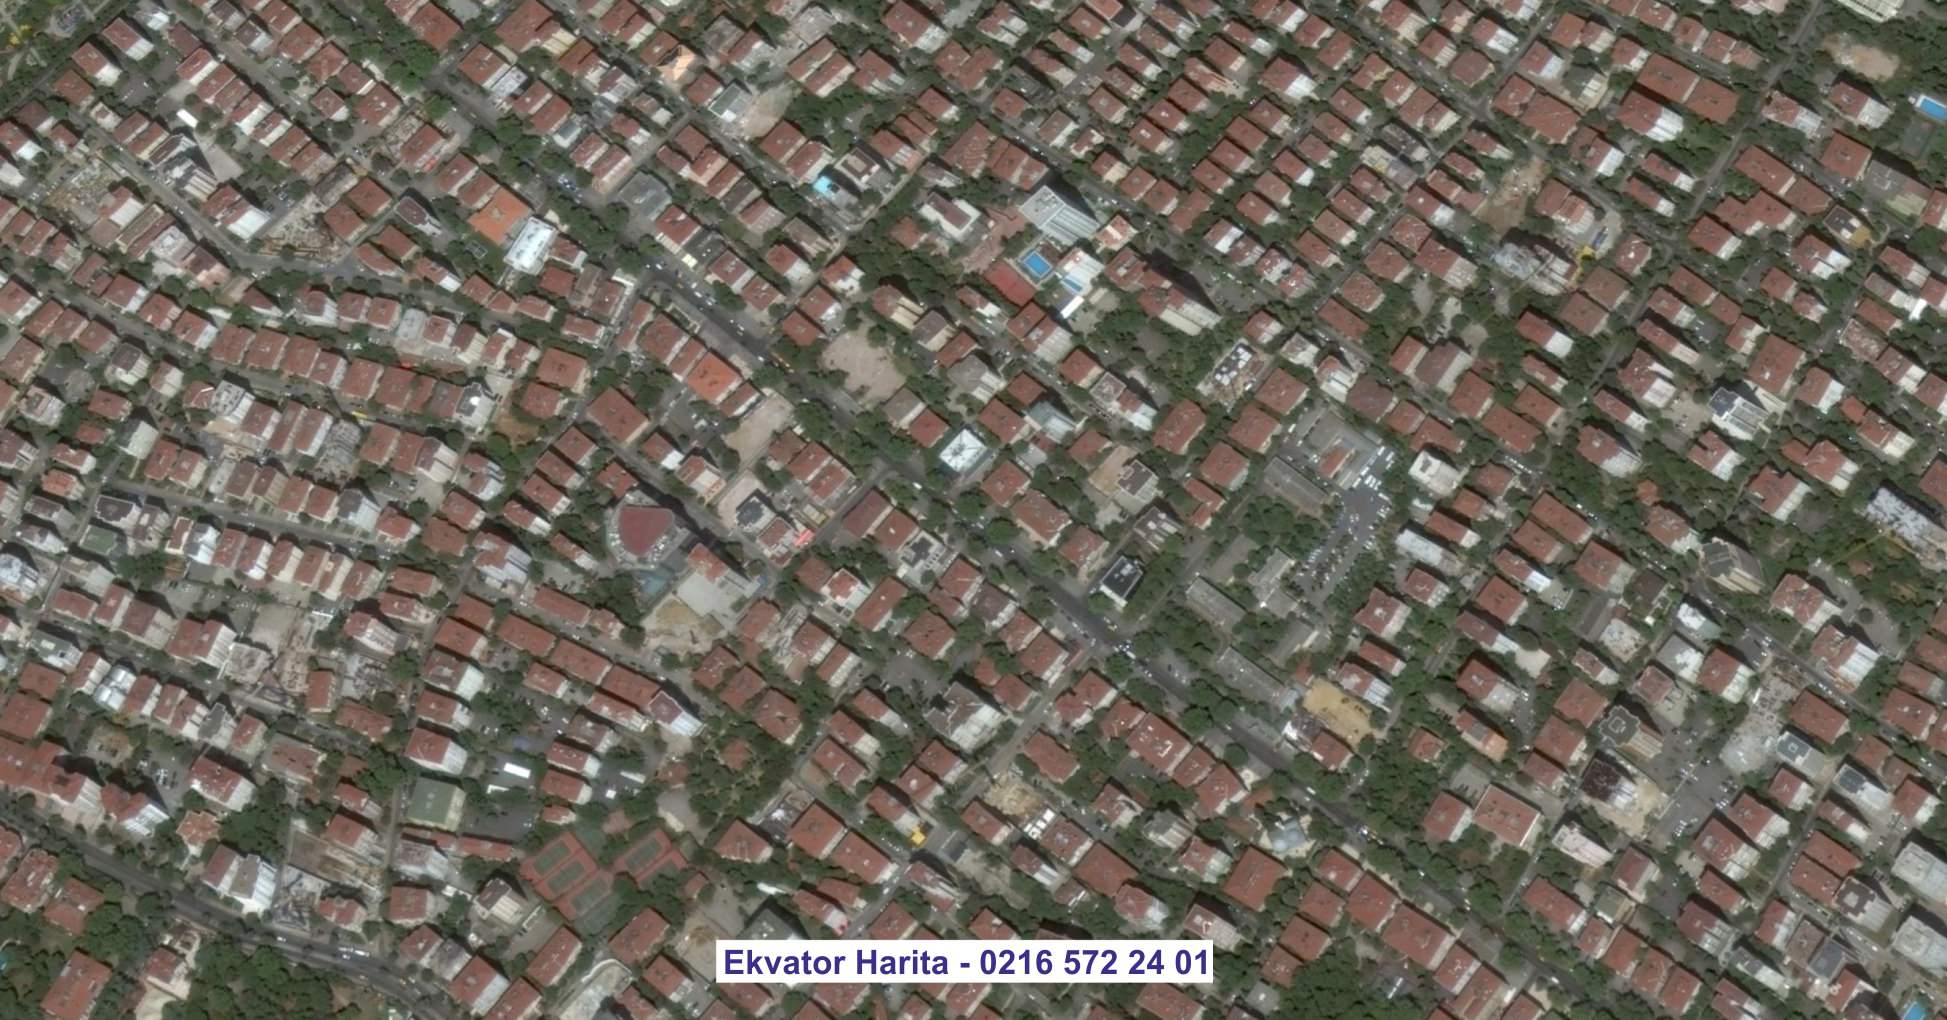 Rize Uydu Görüntüsü Örnek Fotoğrafı